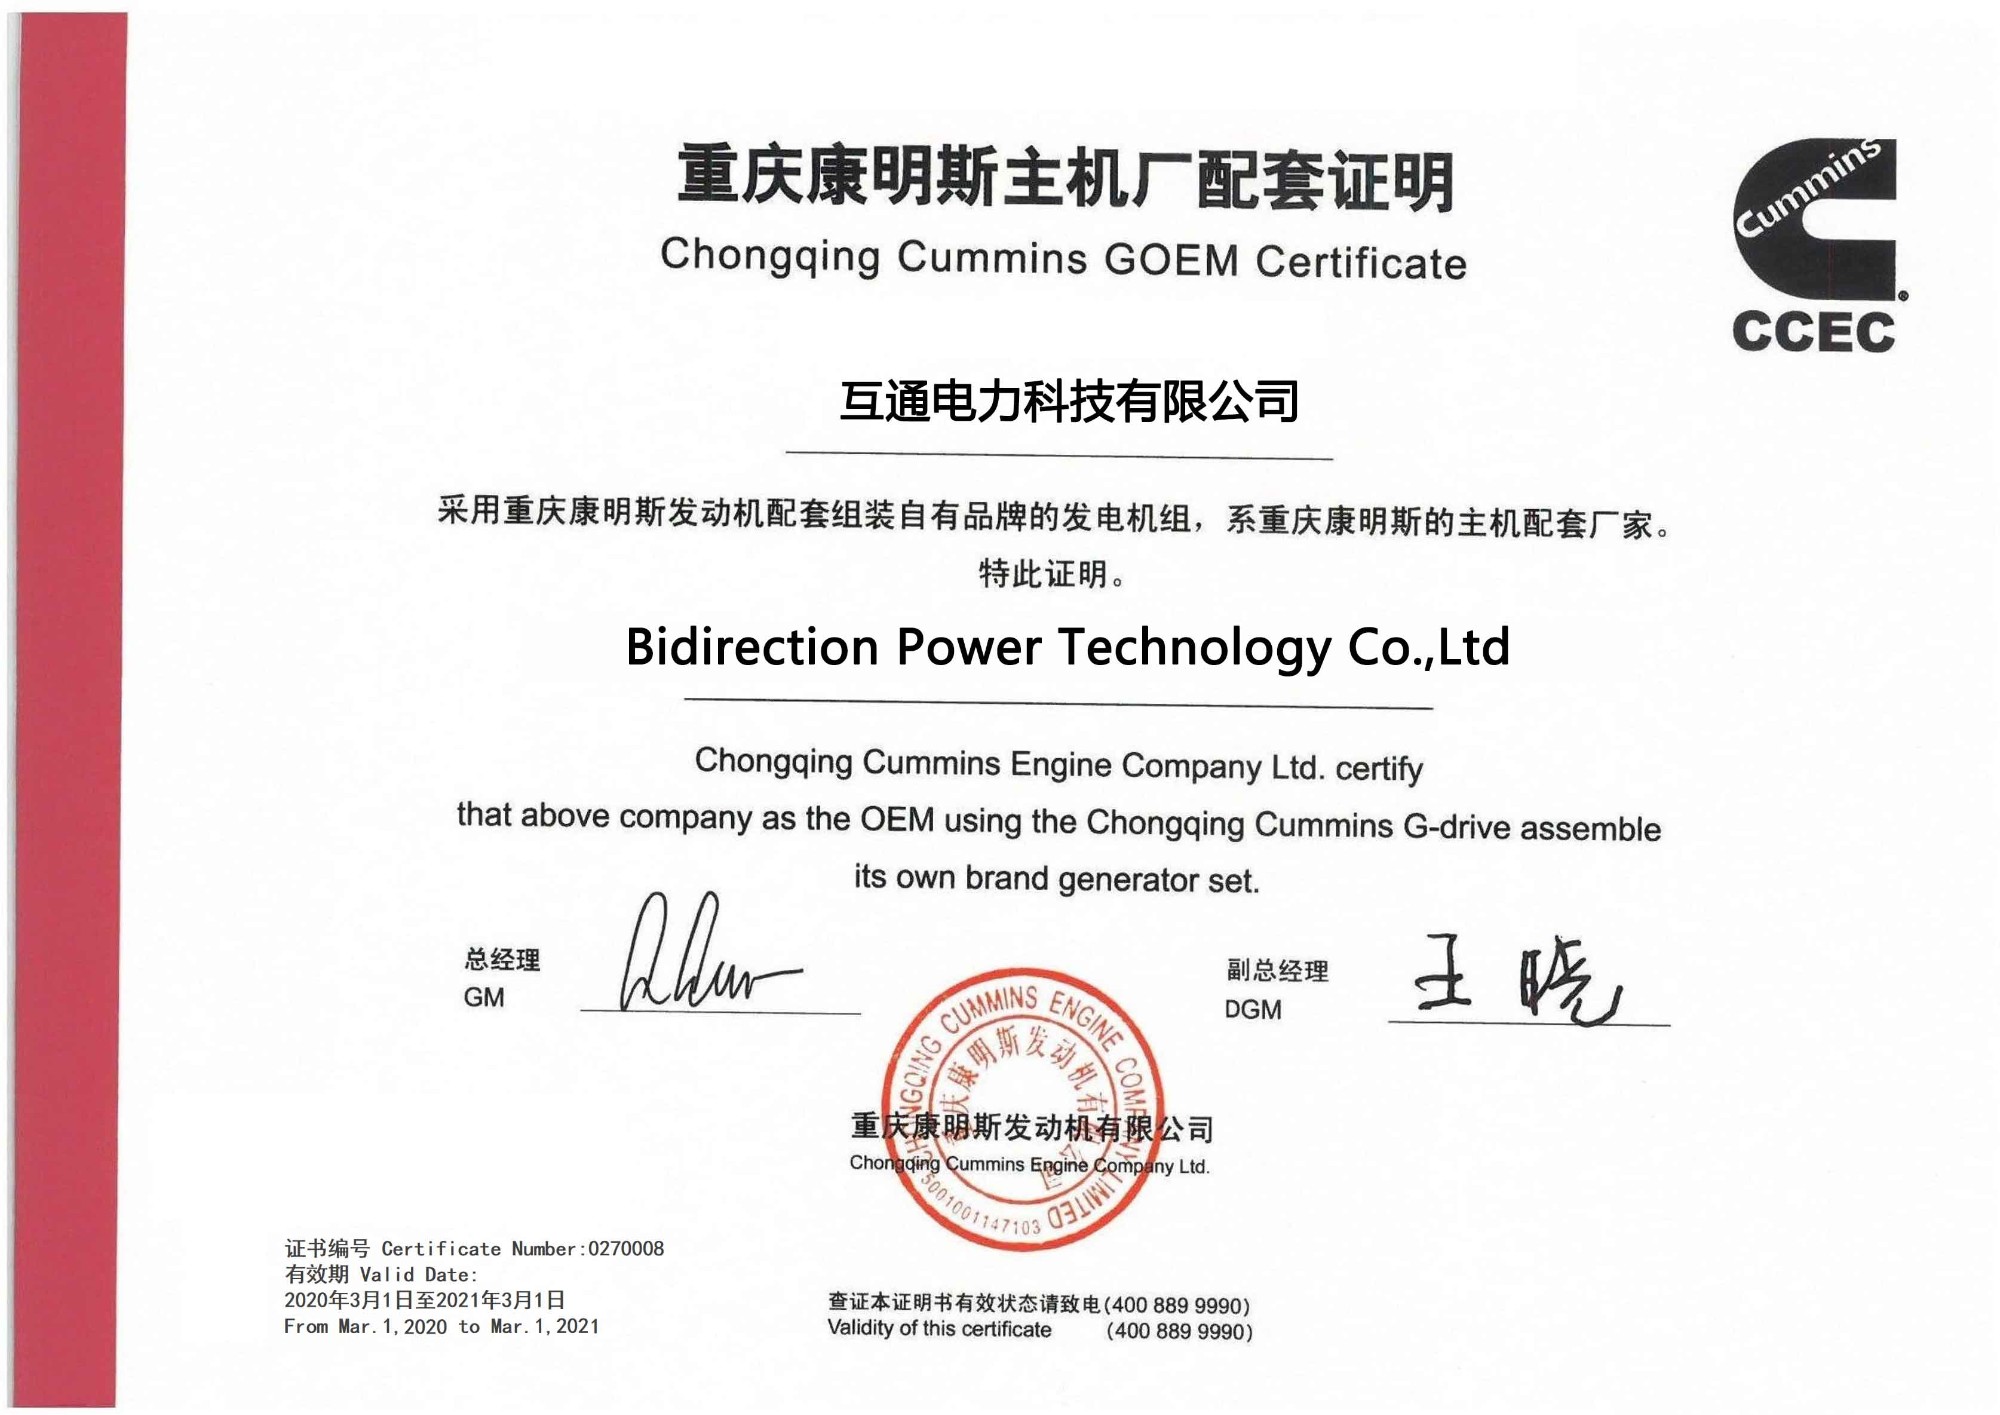 Bidirection Power Technology Co., Ltd Godkjent av Chongqing Cummins GOEM-sertifikat